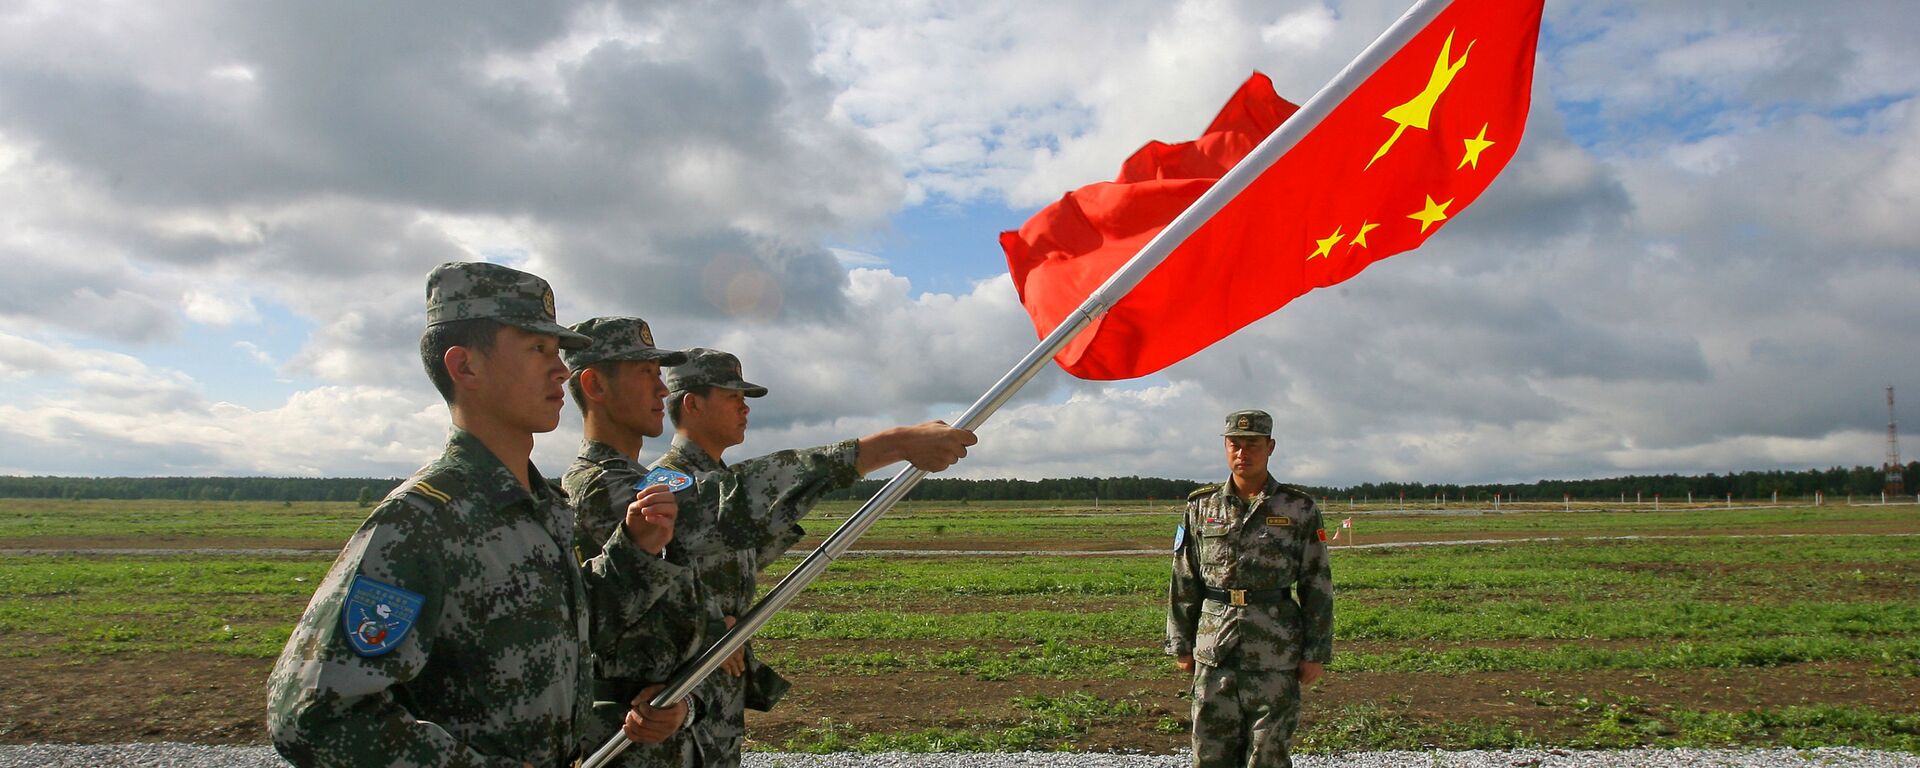 Militares del Ejército Popular de Liberación con la bandera de China  - Sputnik Mundo, 1920, 26.09.2021